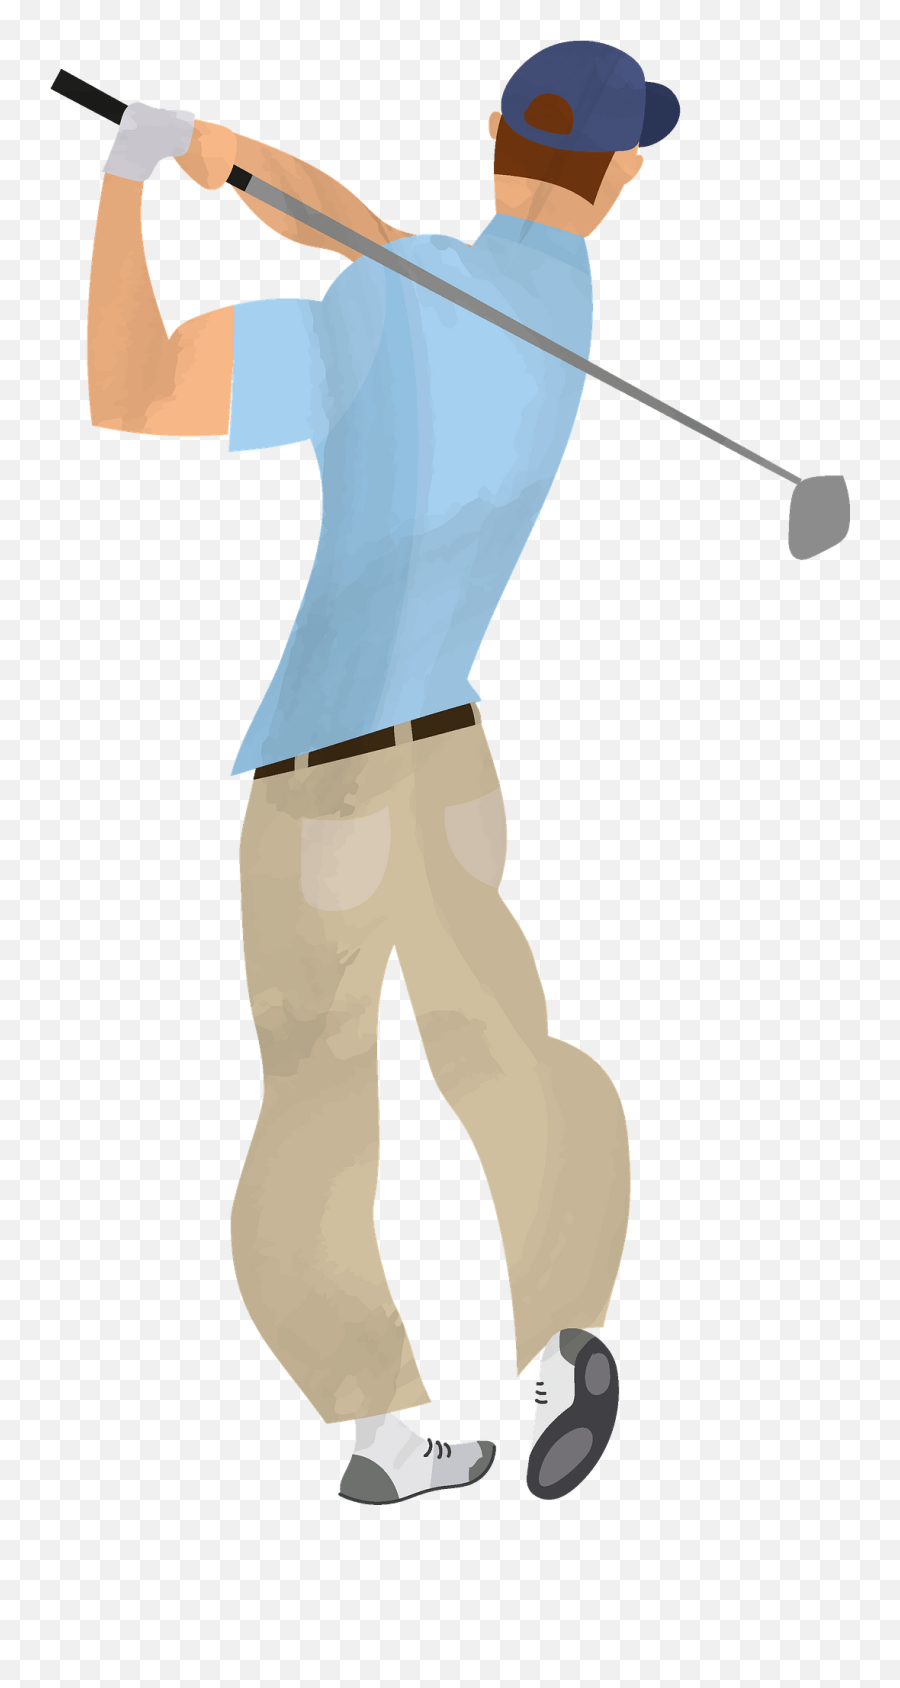 Golf Clipart Free Download Transparent Png Creazilla - Lob Wedge Emoji,Golf Clipart